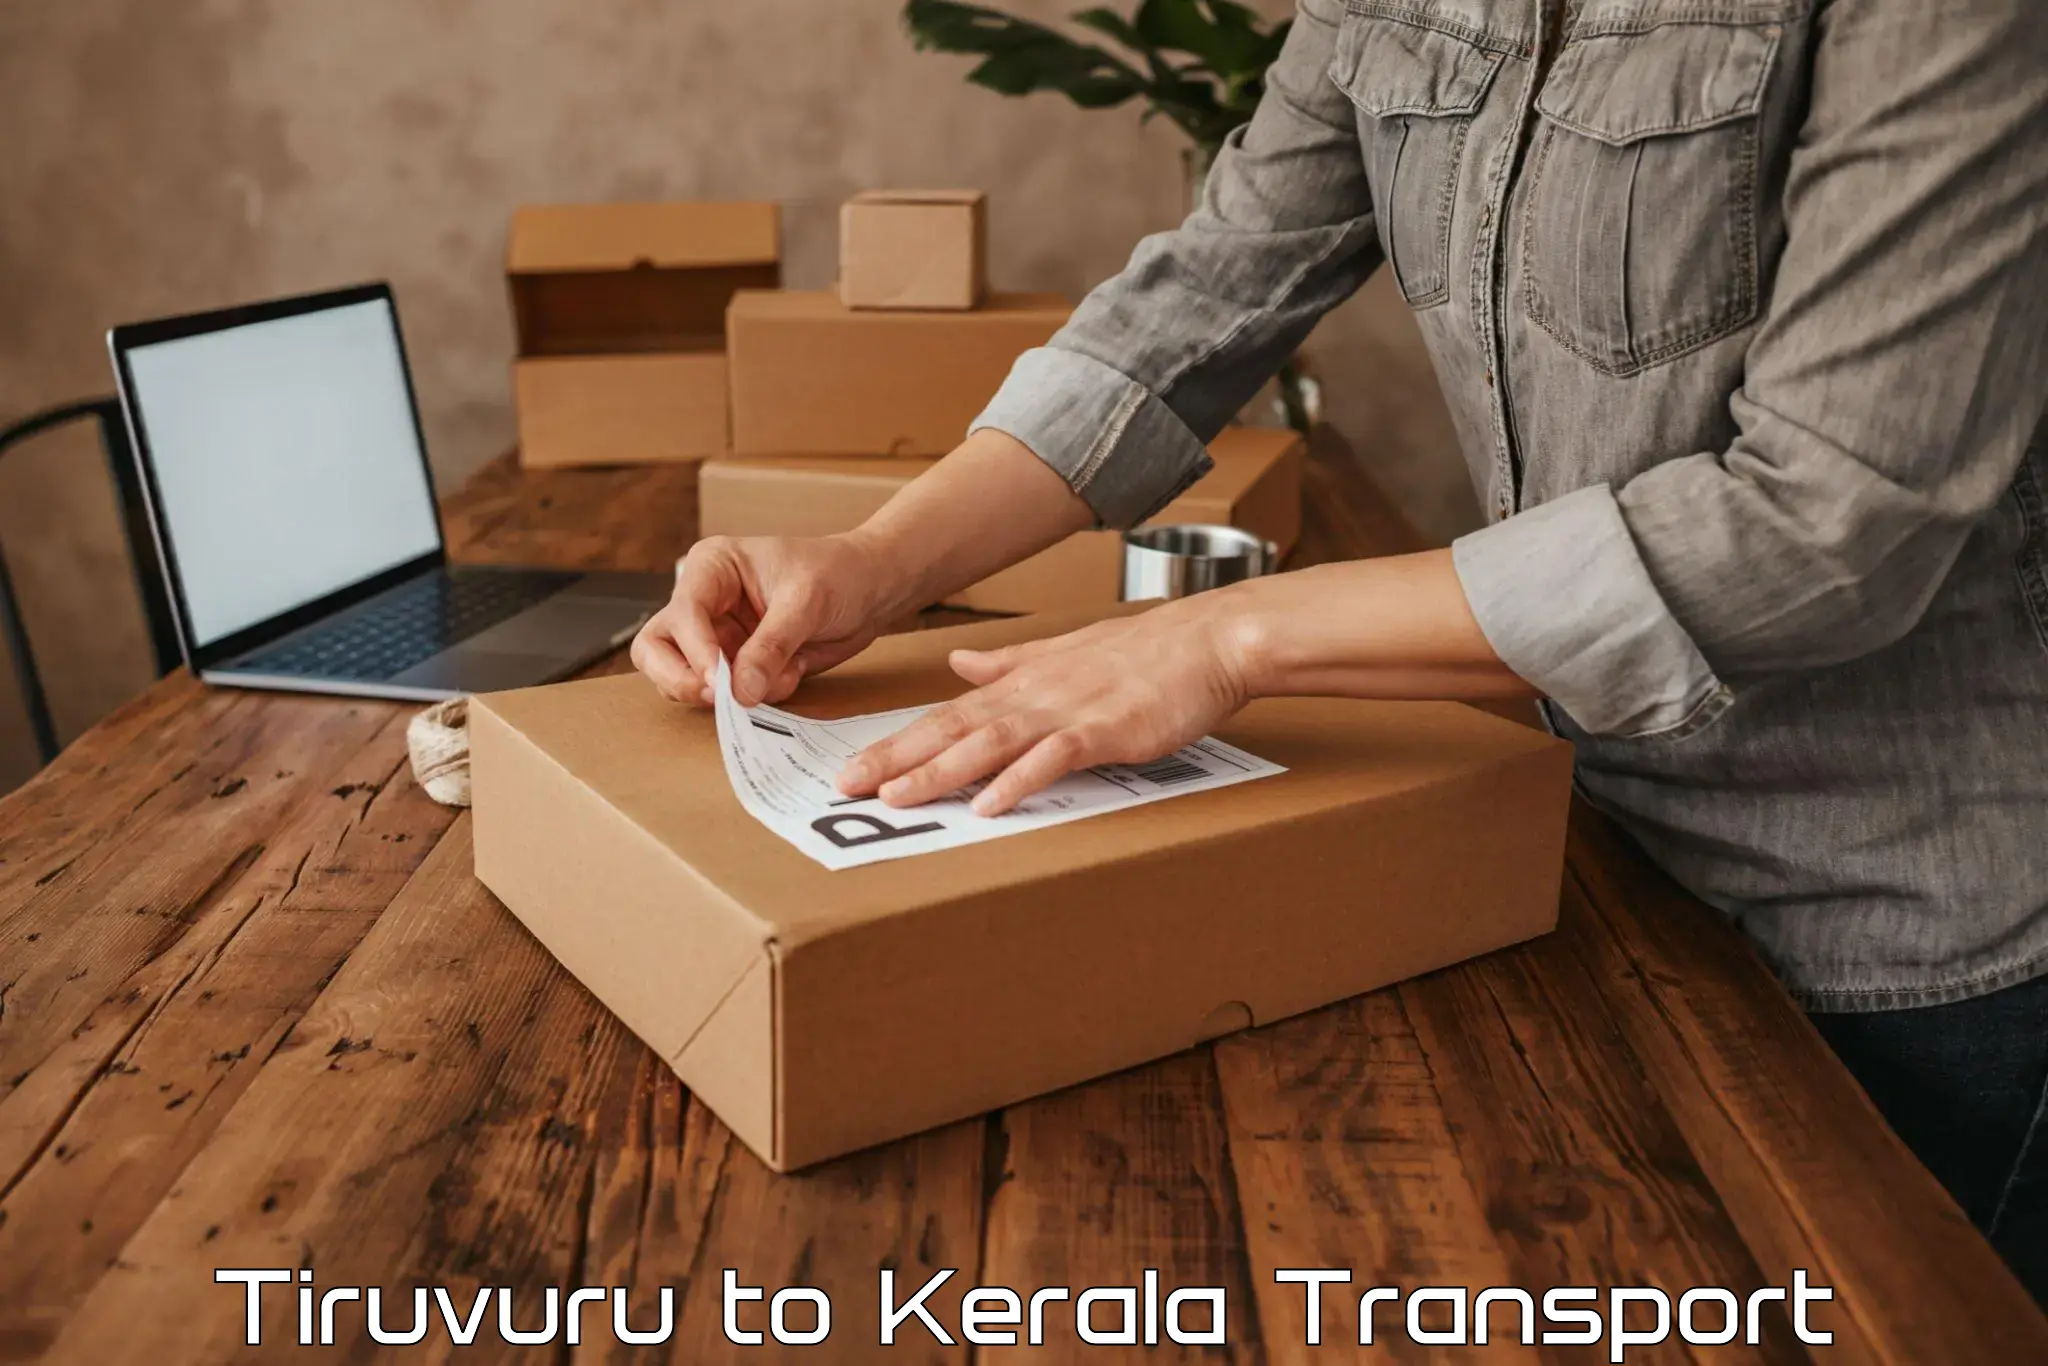 Transport in sharing Tiruvuru to Kanhangad